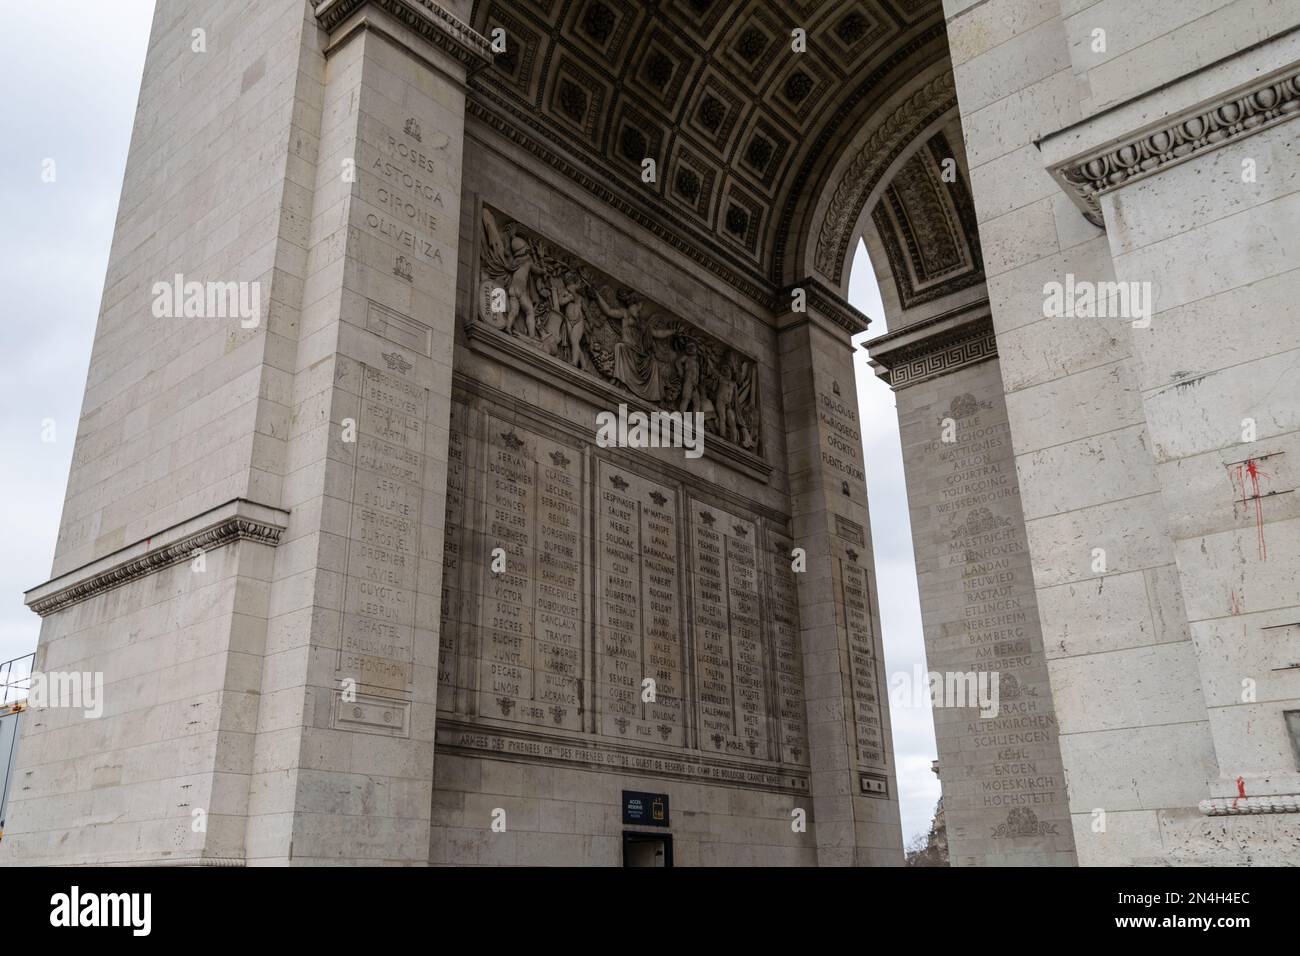 Arc de Triomphe a Parigi, visitare Parigi, Turismo a Parigi. Grandi monumenti europei, in stile Haussmann. Place Charles de Gaulle Place de l'Étoile. Foto Stock